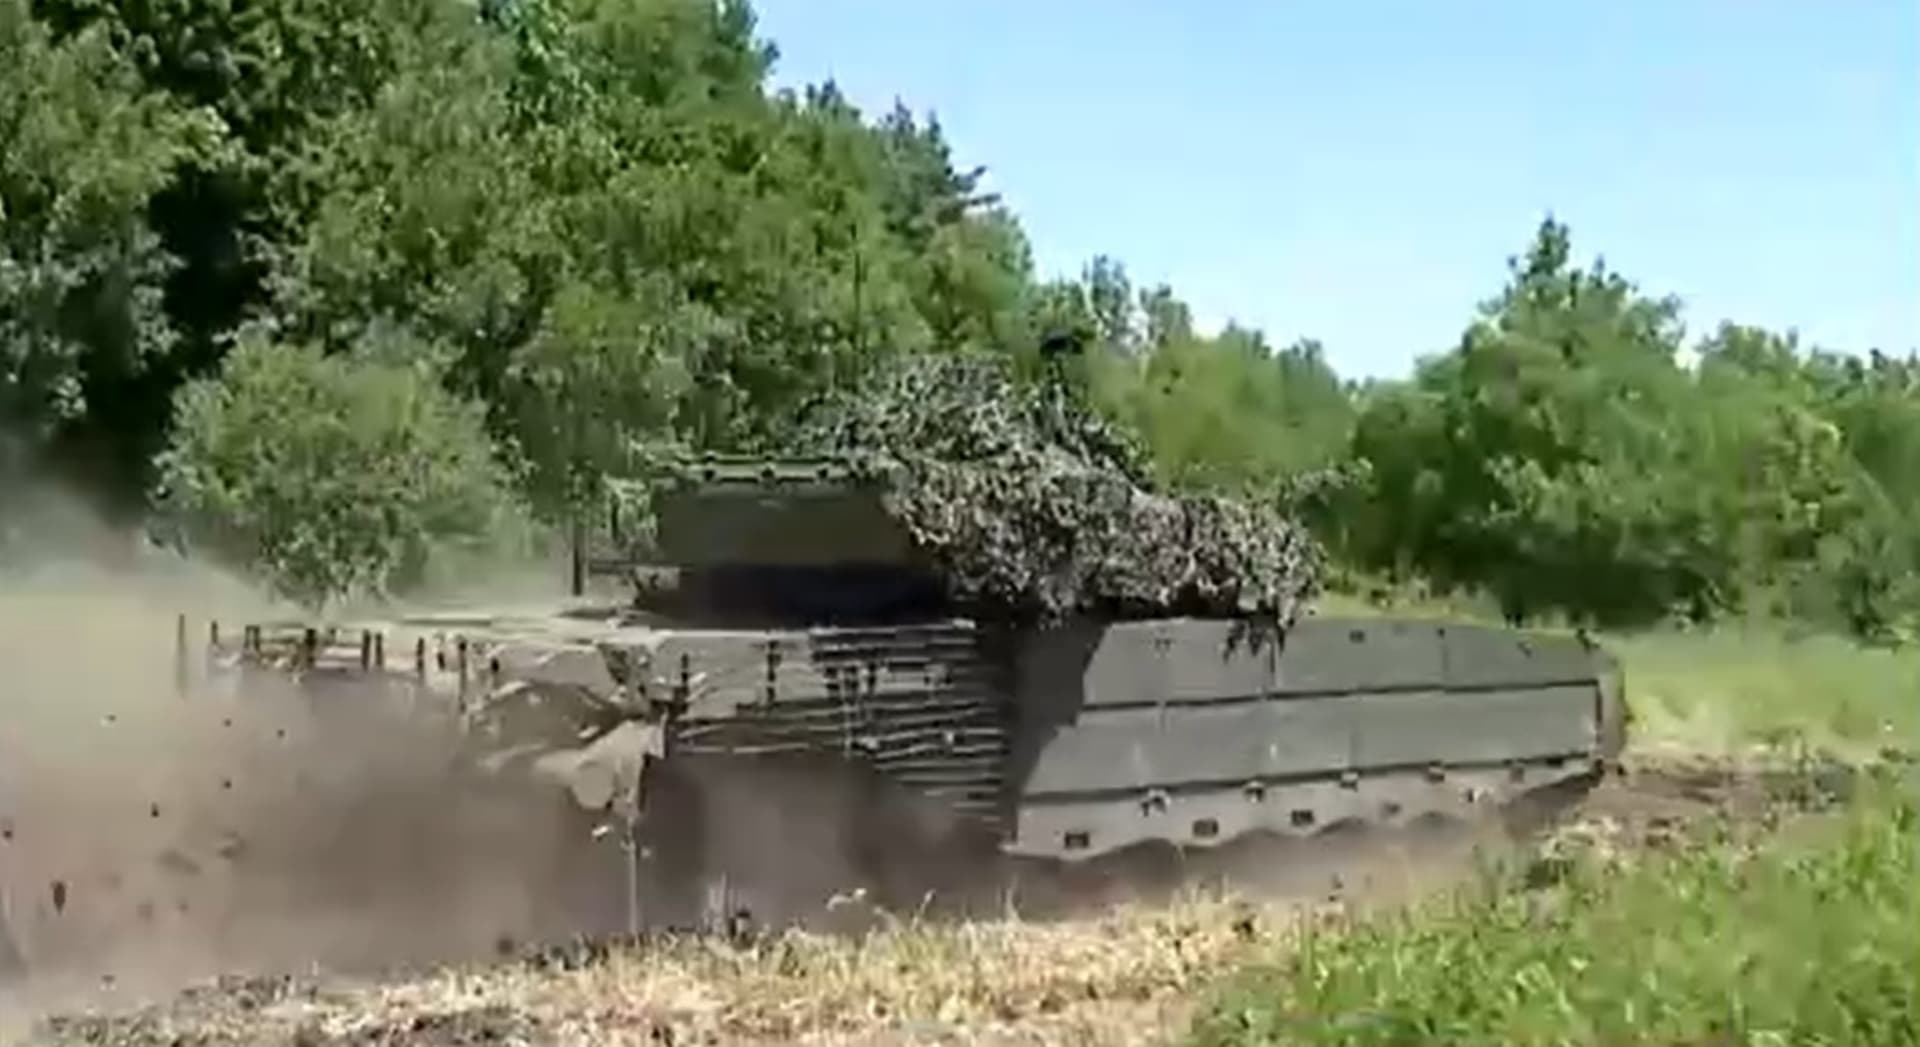 Ukrajinci si pochvalují novou kořist v podobně ruského tanku T-80.